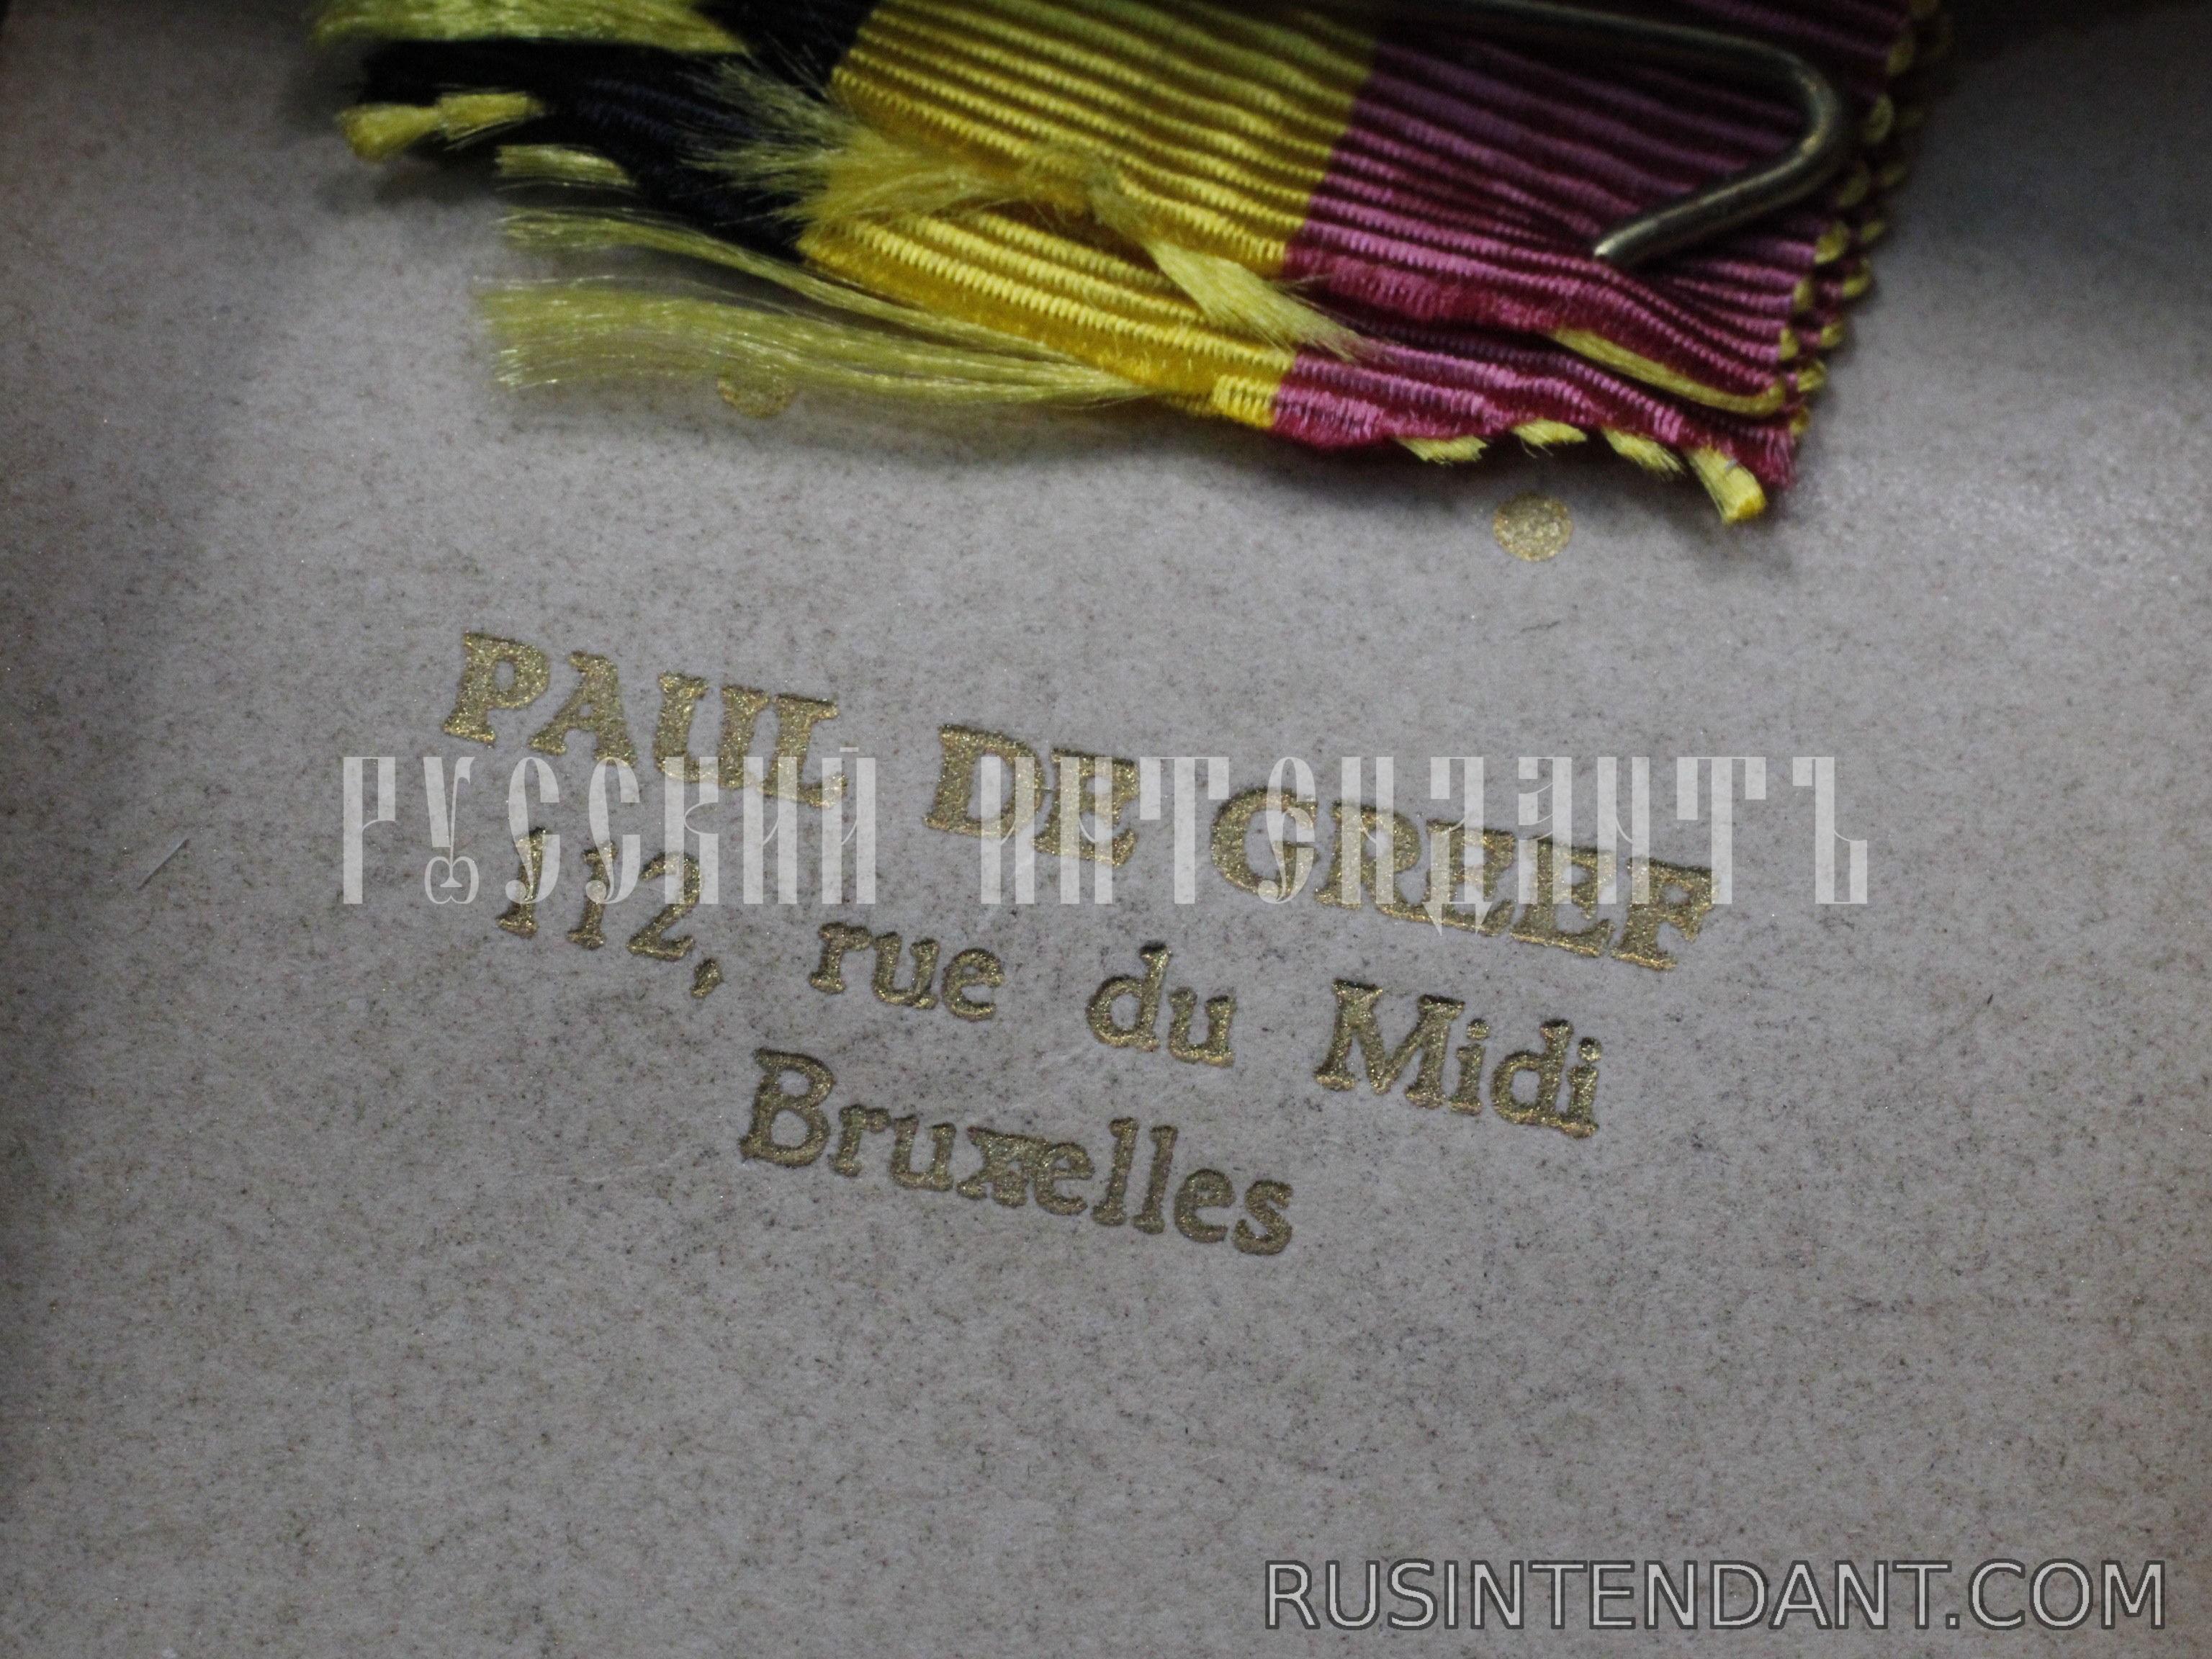 Фото 6: Бельгийская трудовая медаль 2 степени 